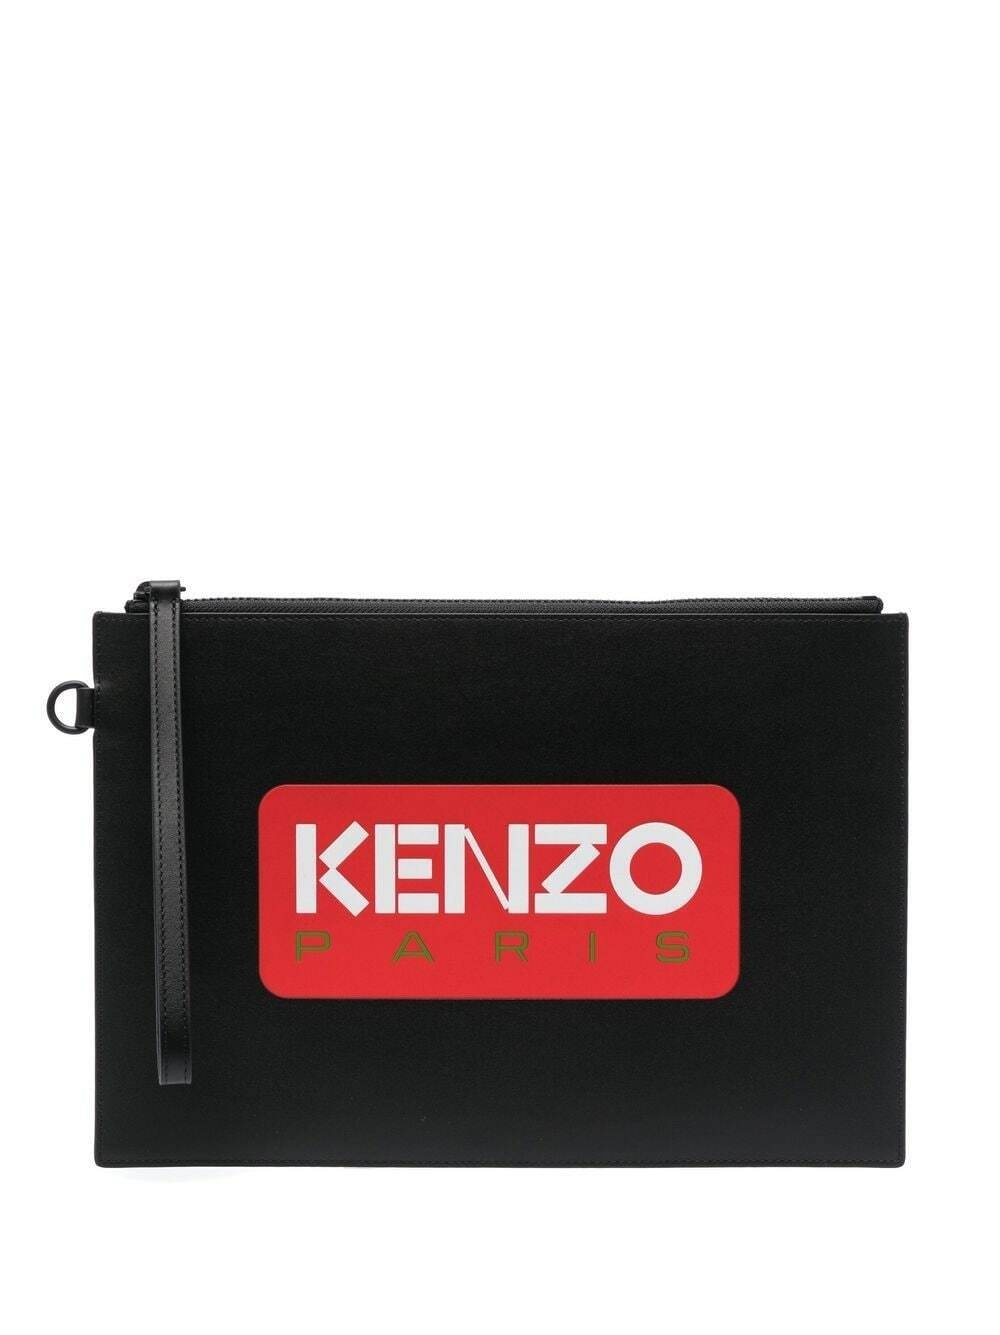 KENZO - Kenzo Paris Leather Pouch Kenzo